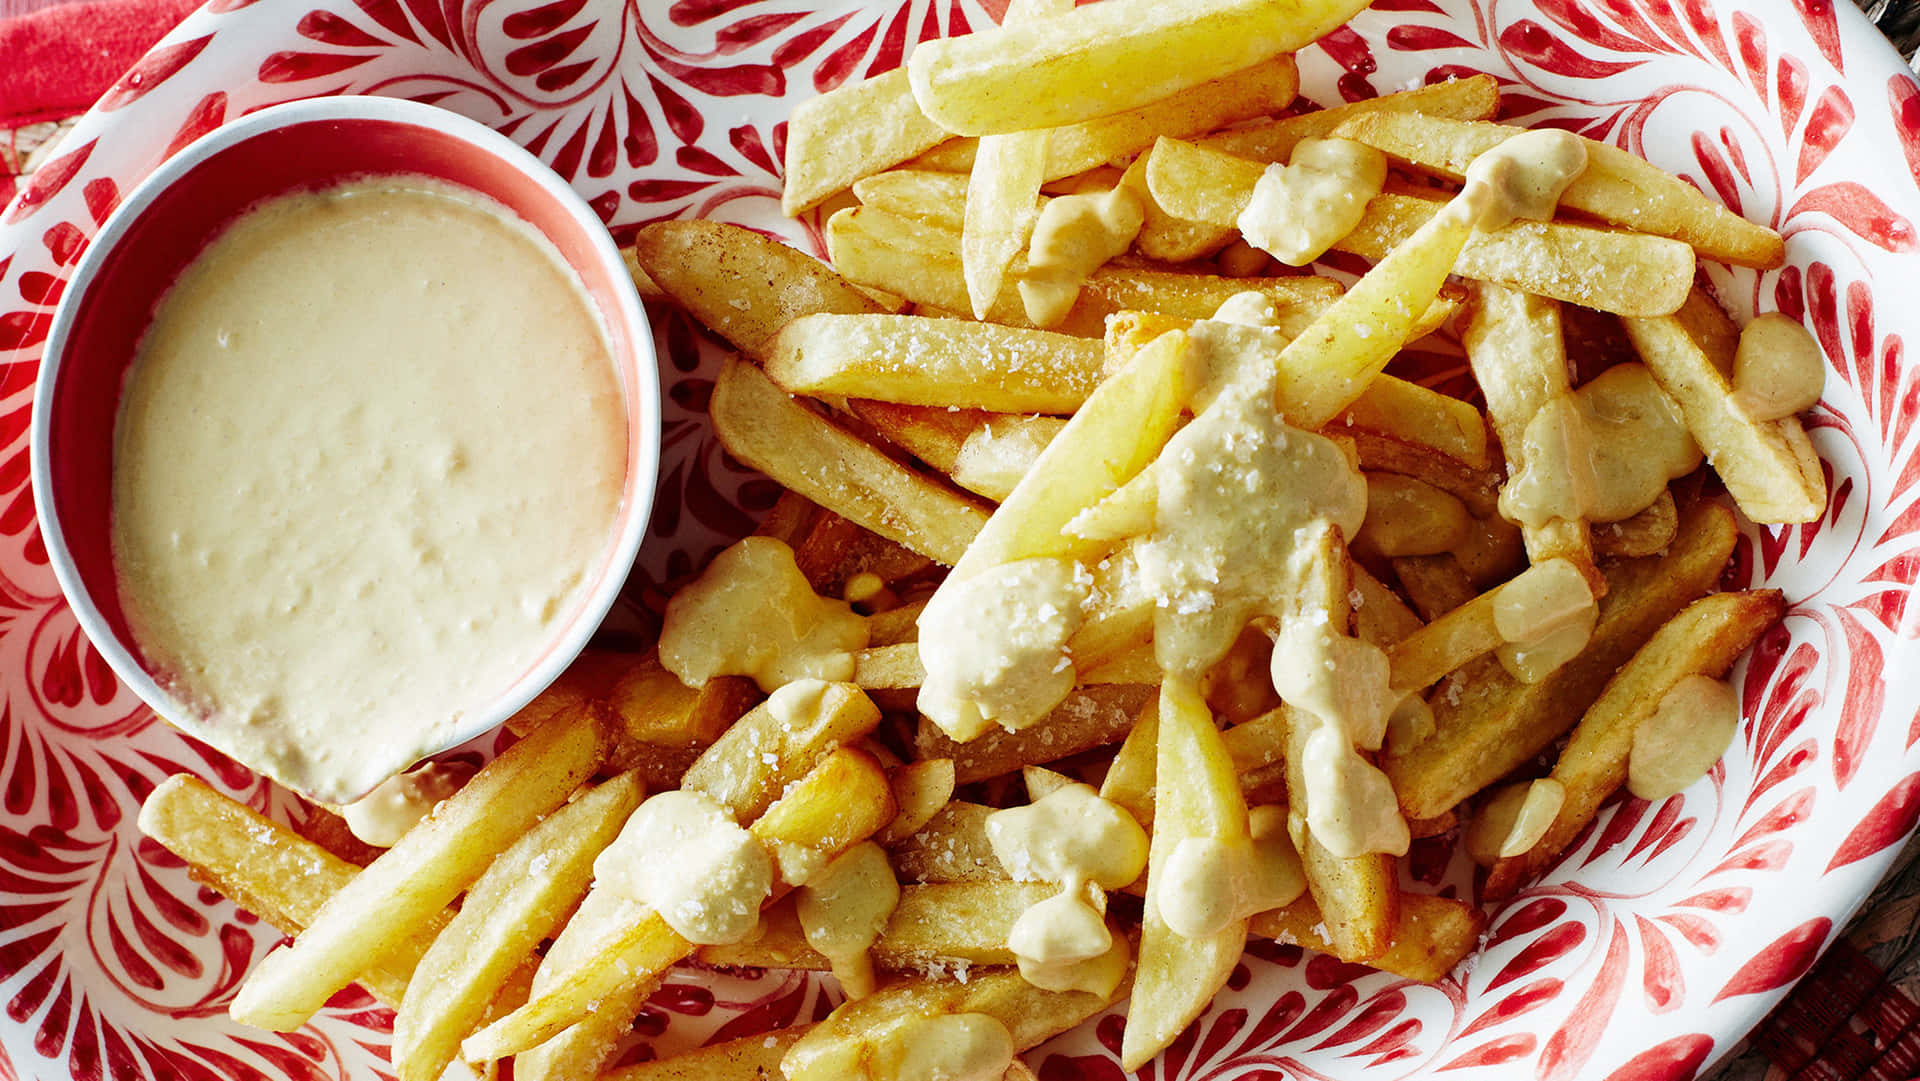 "Golden Delight: Bowl of Crispy French Fries"